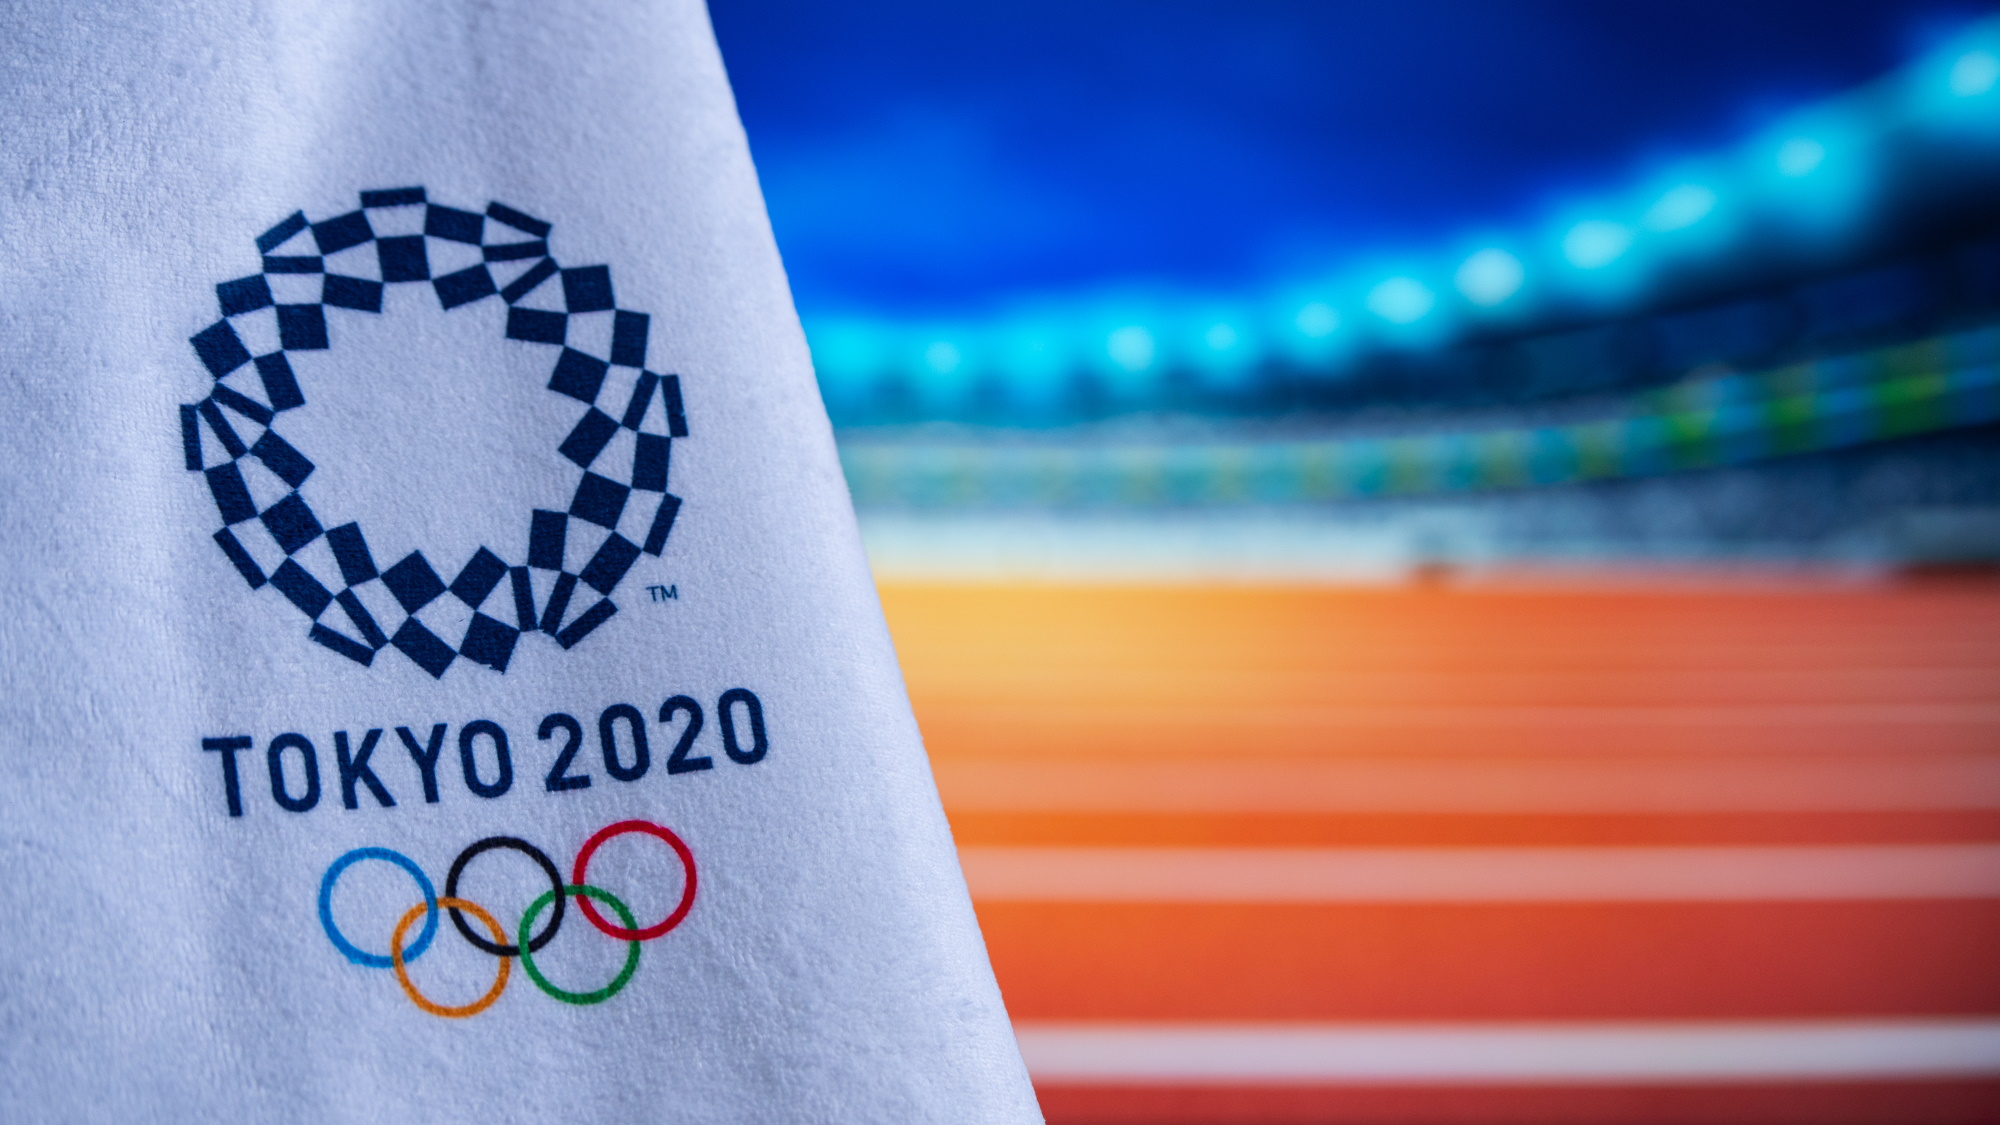 Badminton schedule olympics 2021